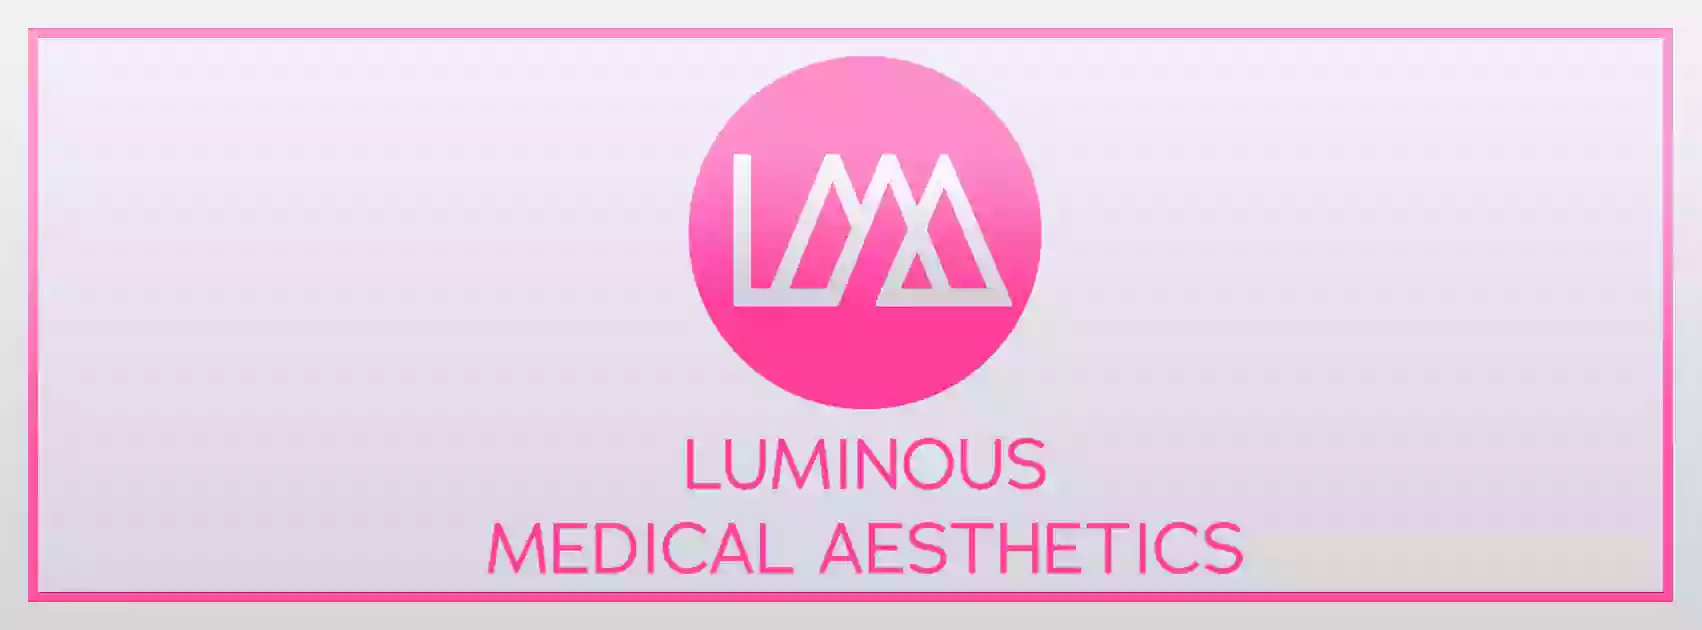 Luminous Medical Aesthetics